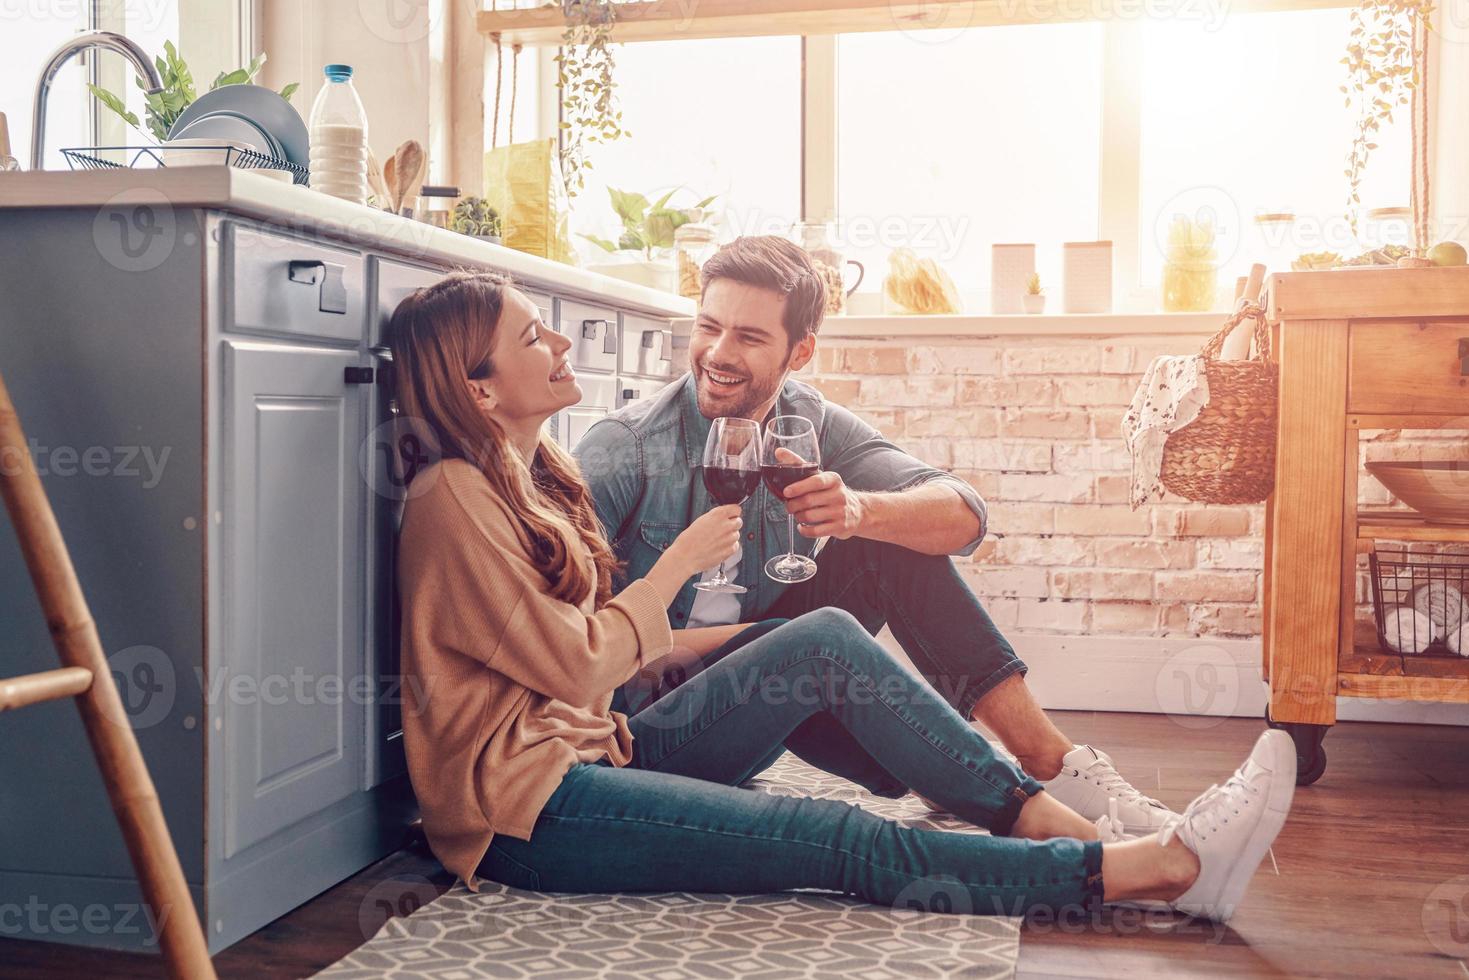 l'amour est dans l'air. beau jeune couple buvant du vin assis sur le sol de la cuisine à la maison photo